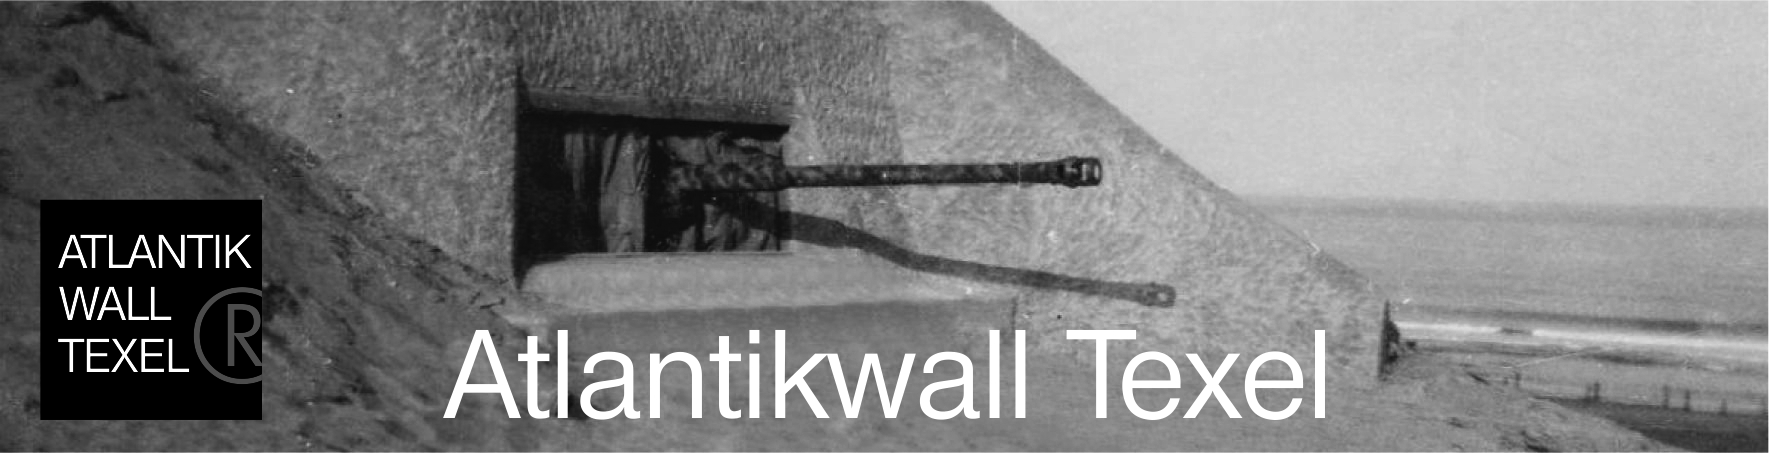 ATLANTIKWALL TEXEL logo